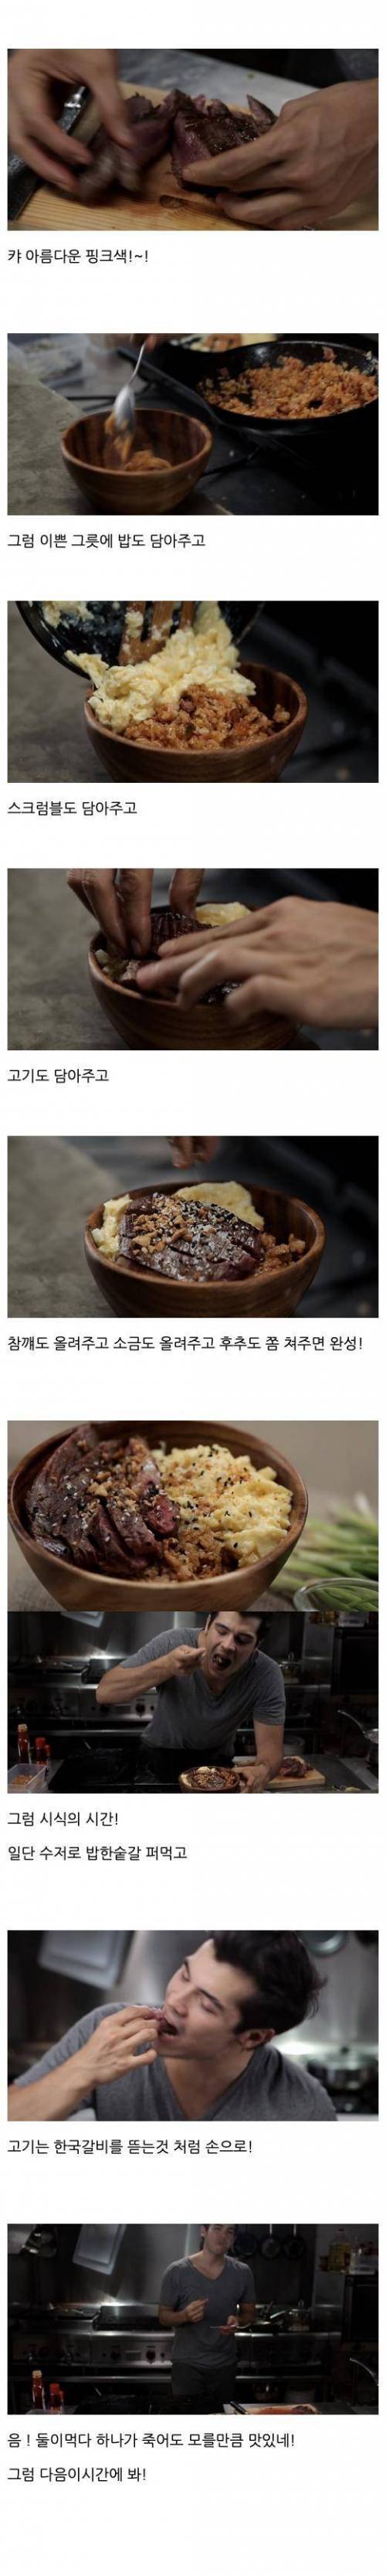 [스압] 한국식 비빔밥 만들기.jpg